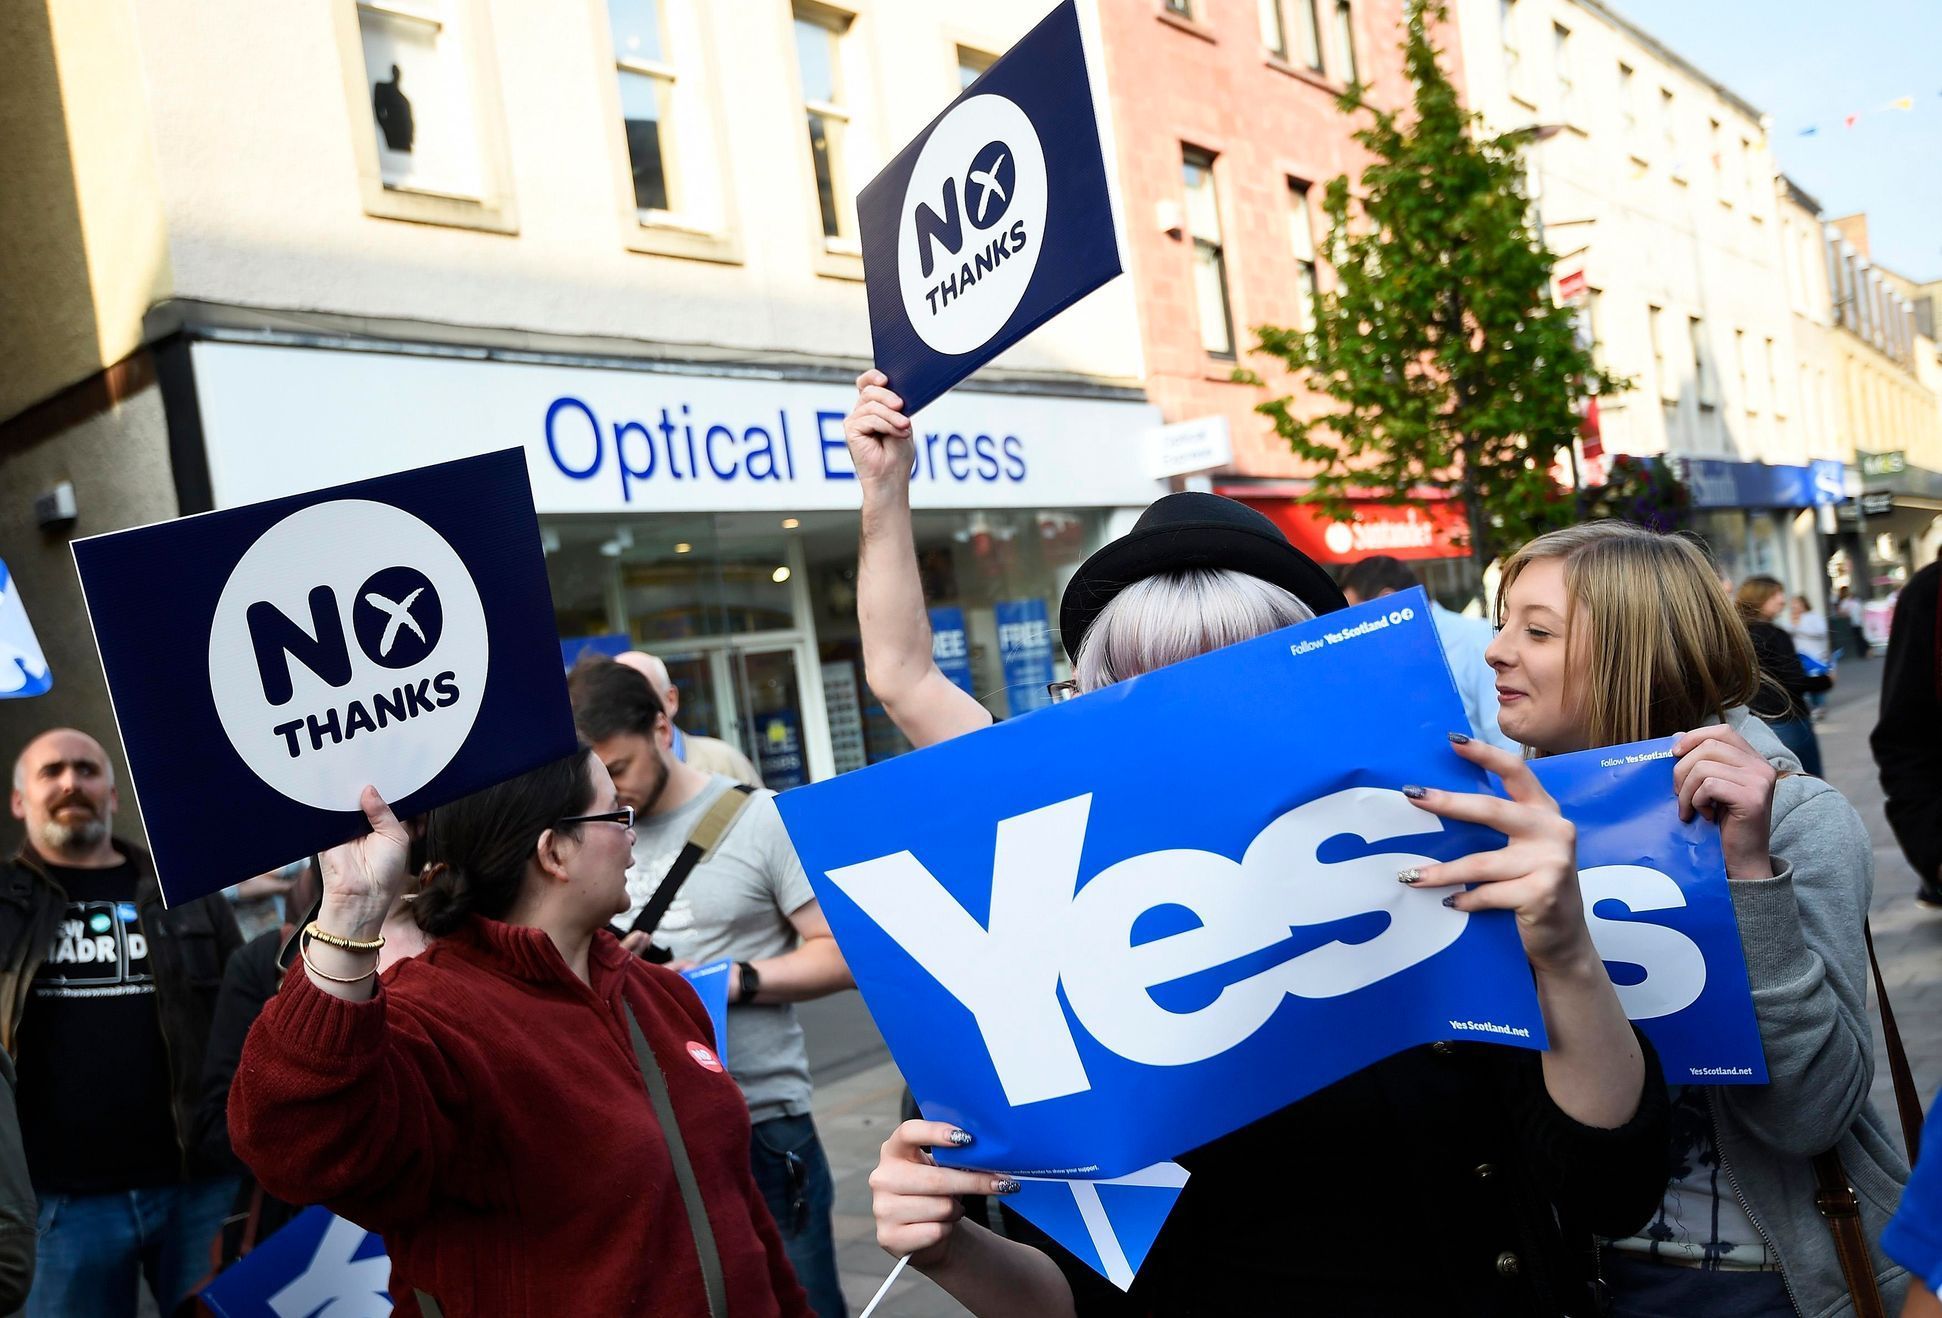 Velká Británie - Skotsko - referendum o nezávislosti